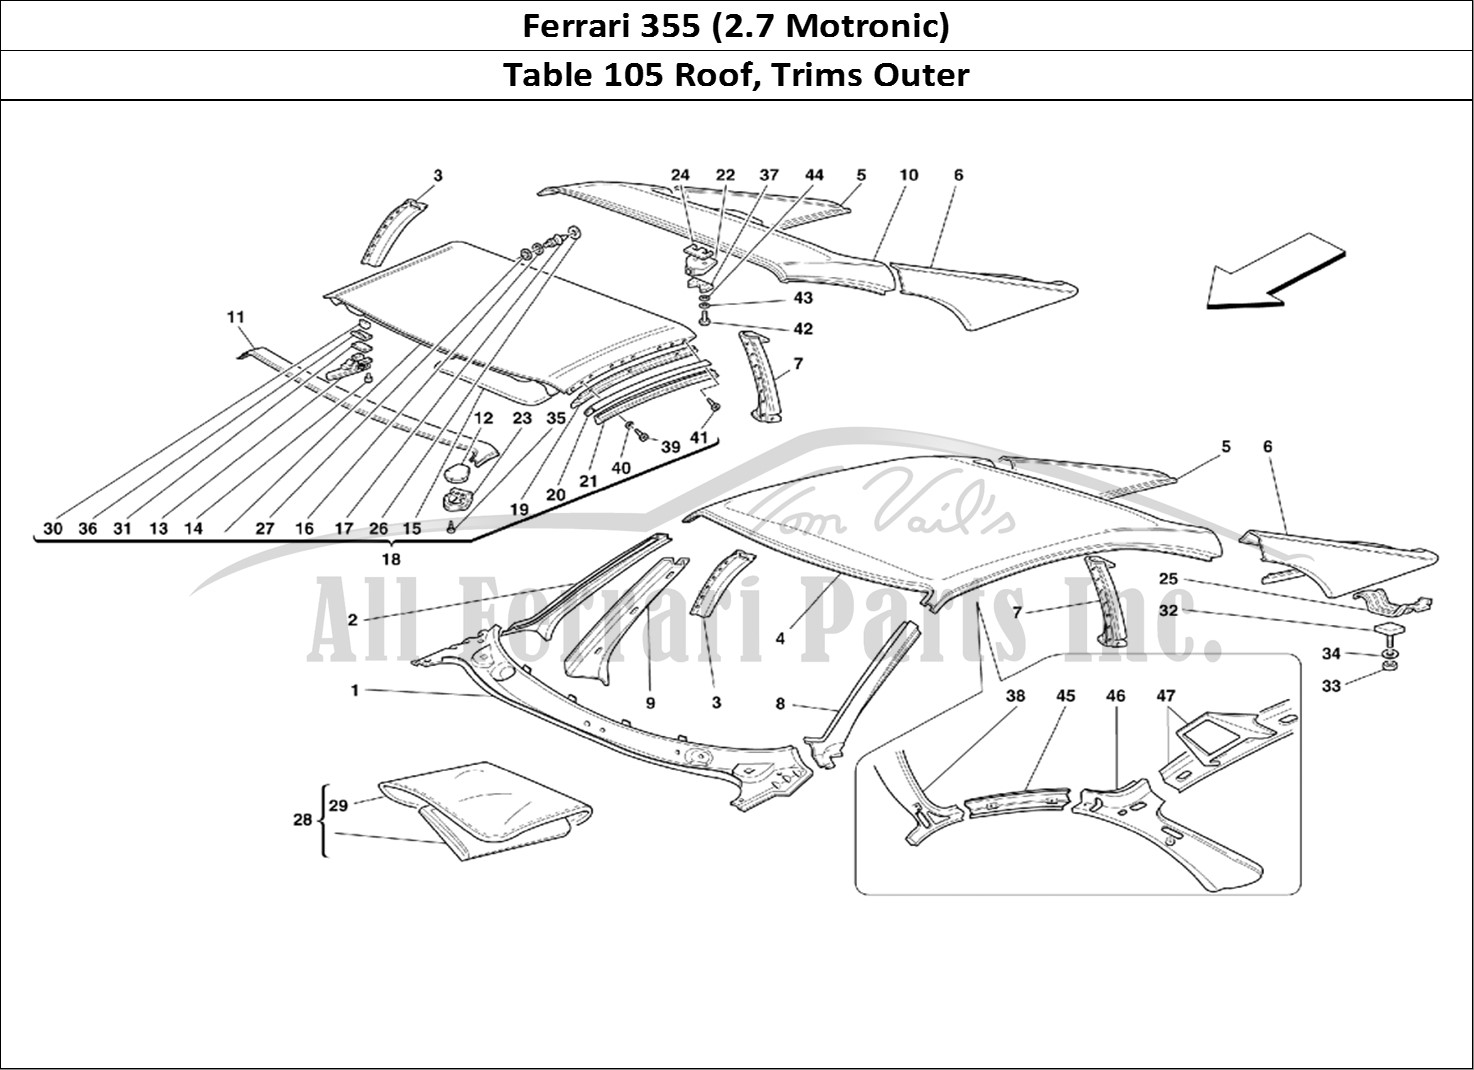 Ferrari Parts Ferrari 355 (2.7 Motronic) Page 105 Roof - Outer Trims